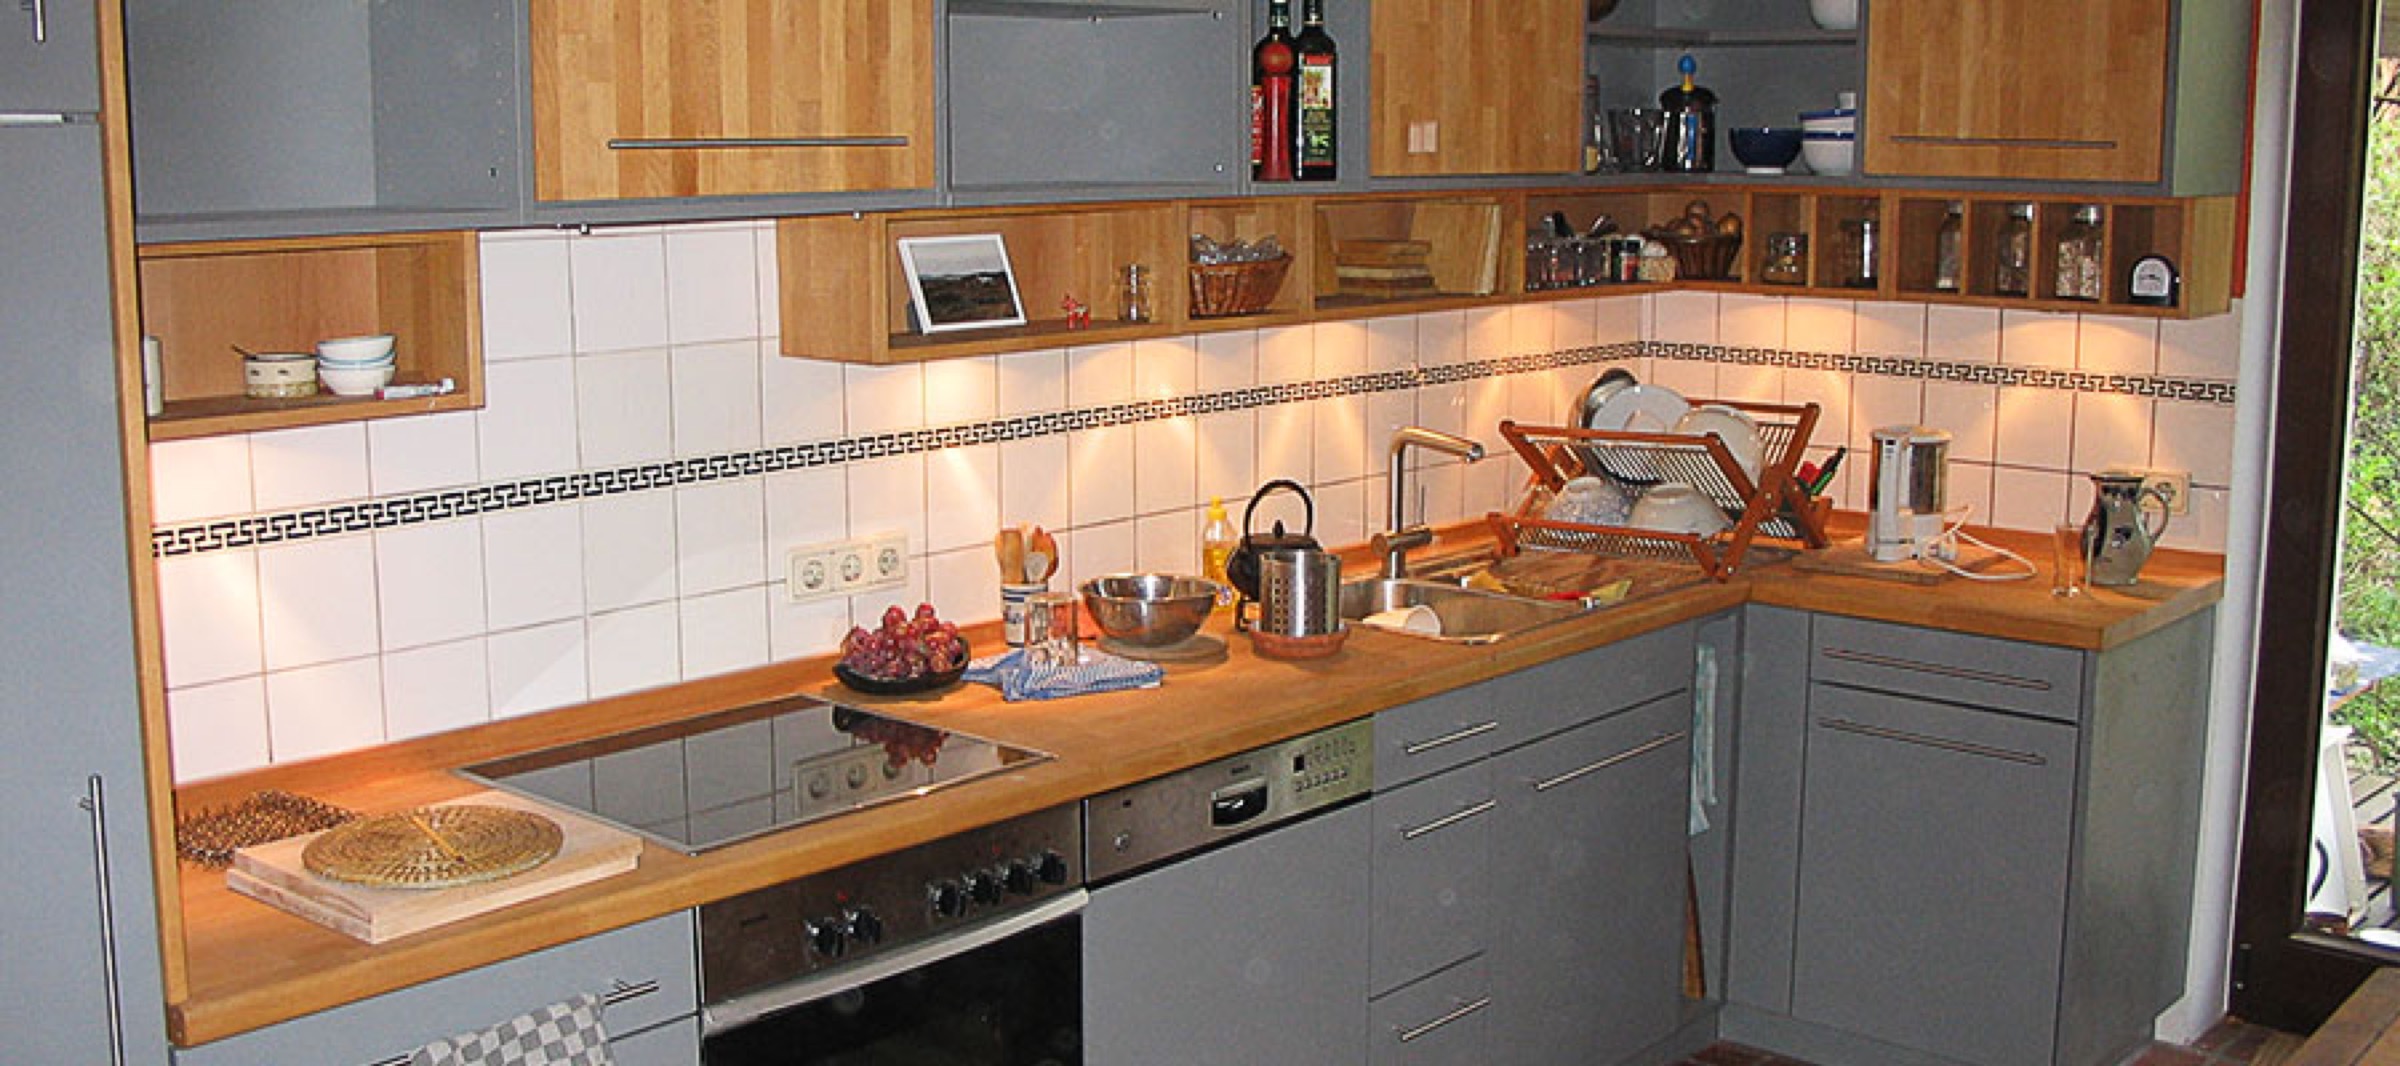 Küchenzeile in Grau und Holzoptik